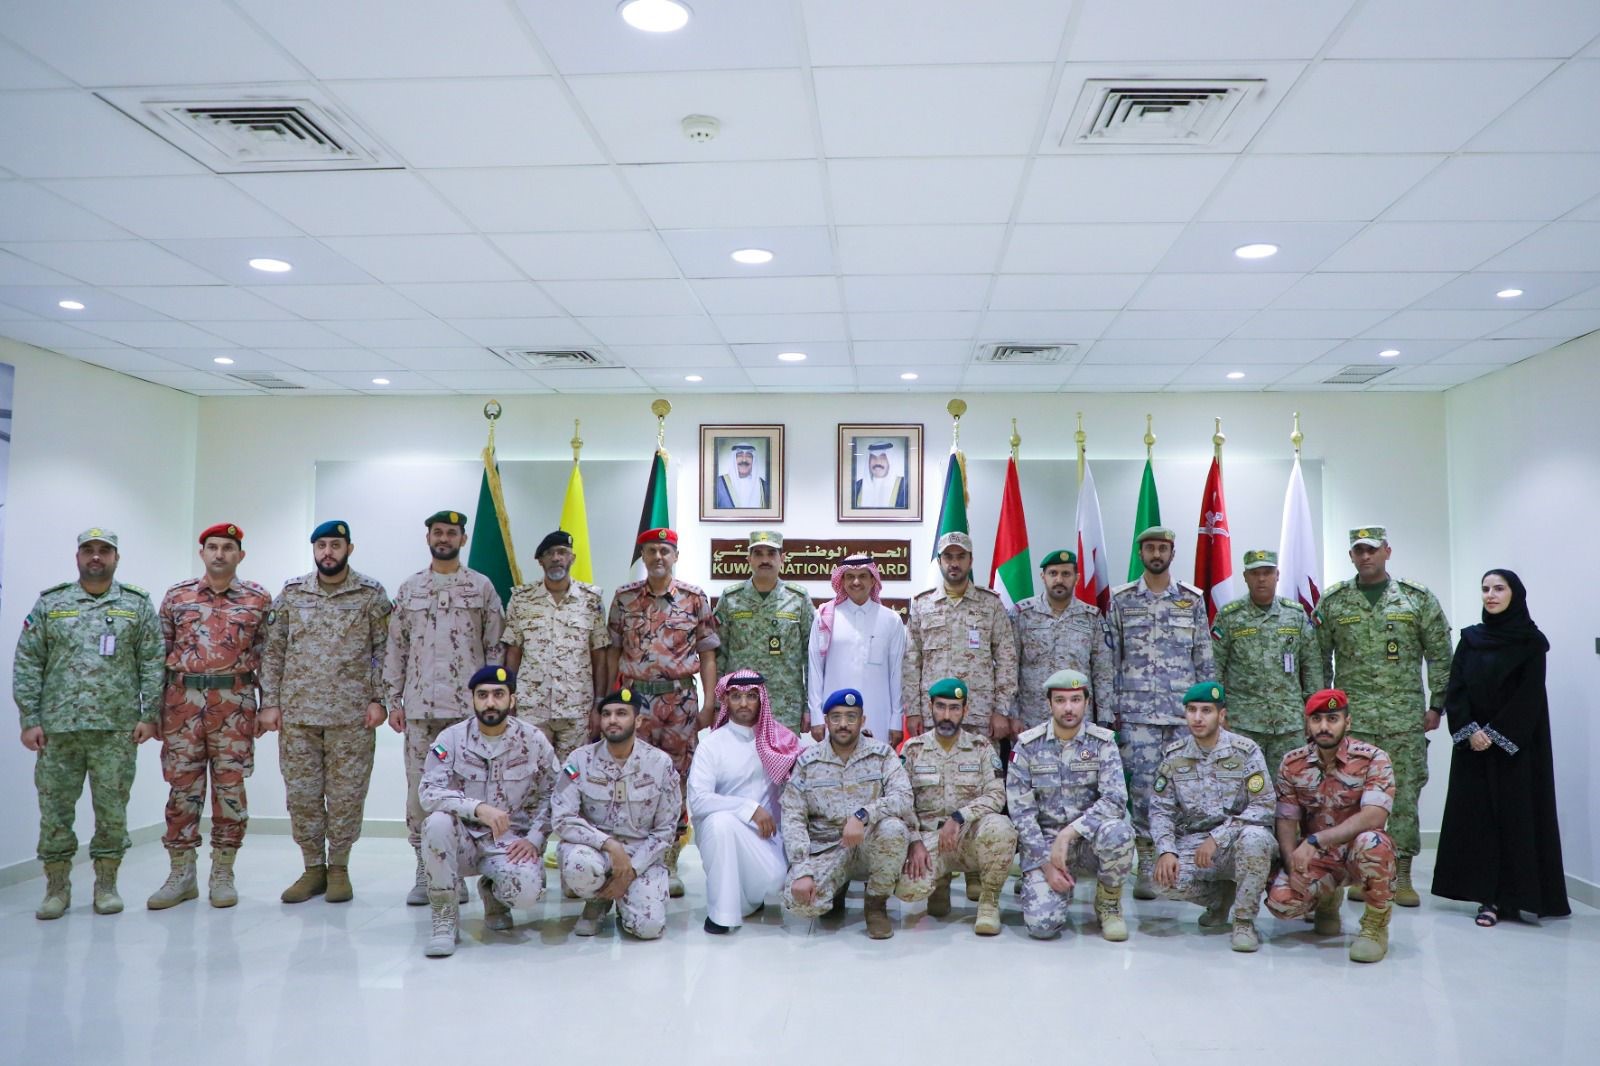 الحرس الوطني الكويتي يبحث مع ممثلي المؤسسات العسكرية الخليجية تبادل الخبرات الإعلامية